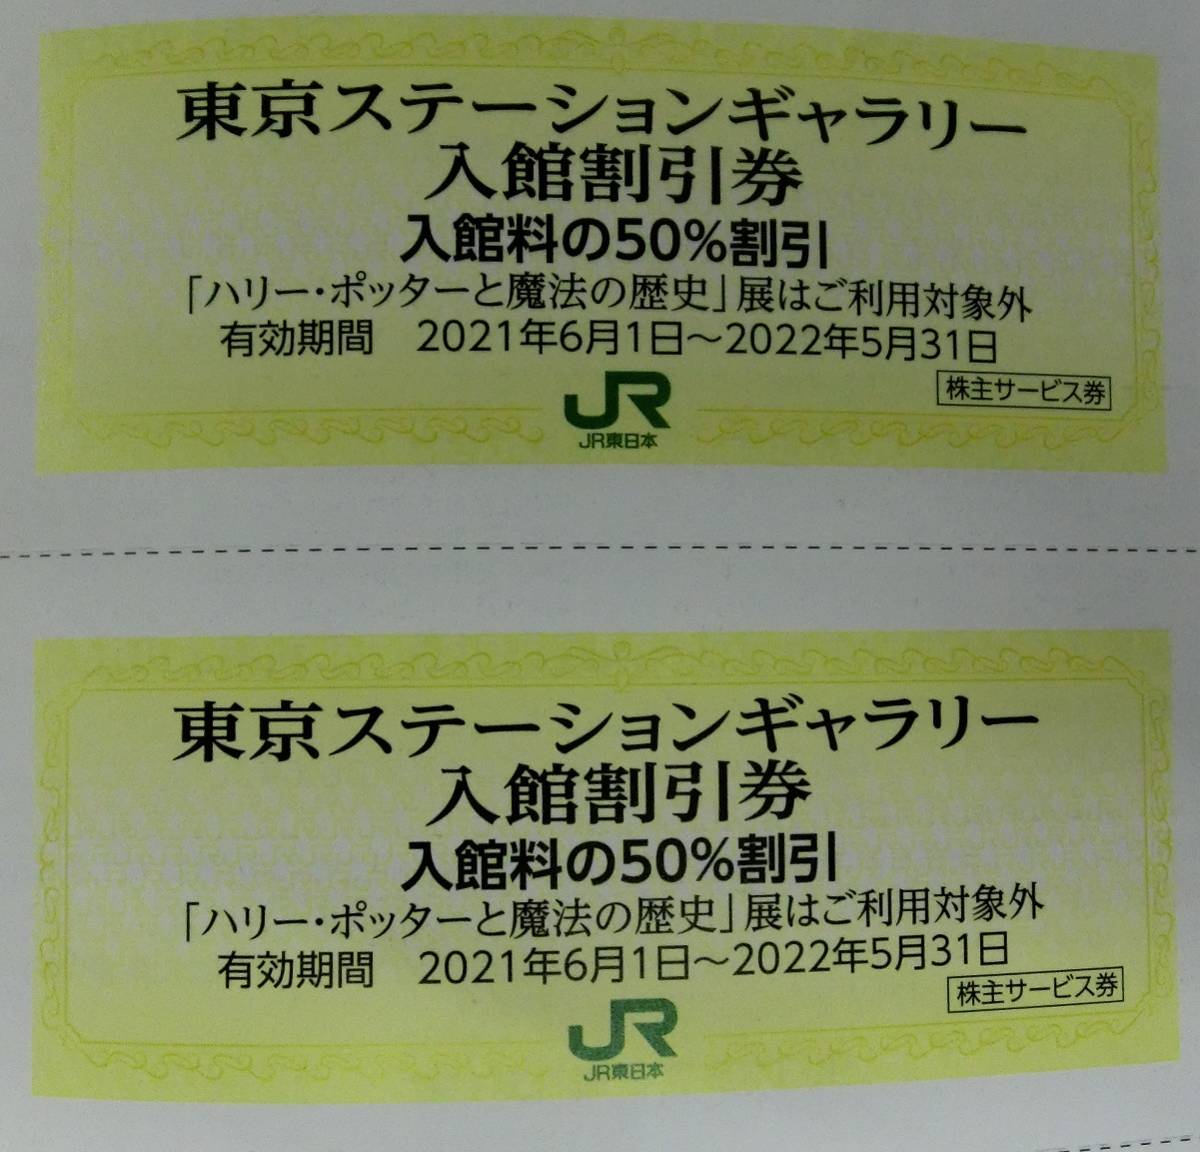 ■東京ステーションギャラリー入場割引券 ２枚 JR東日本[東日本旅客鉄道]送料無料[自己紹介必読]■_画像1